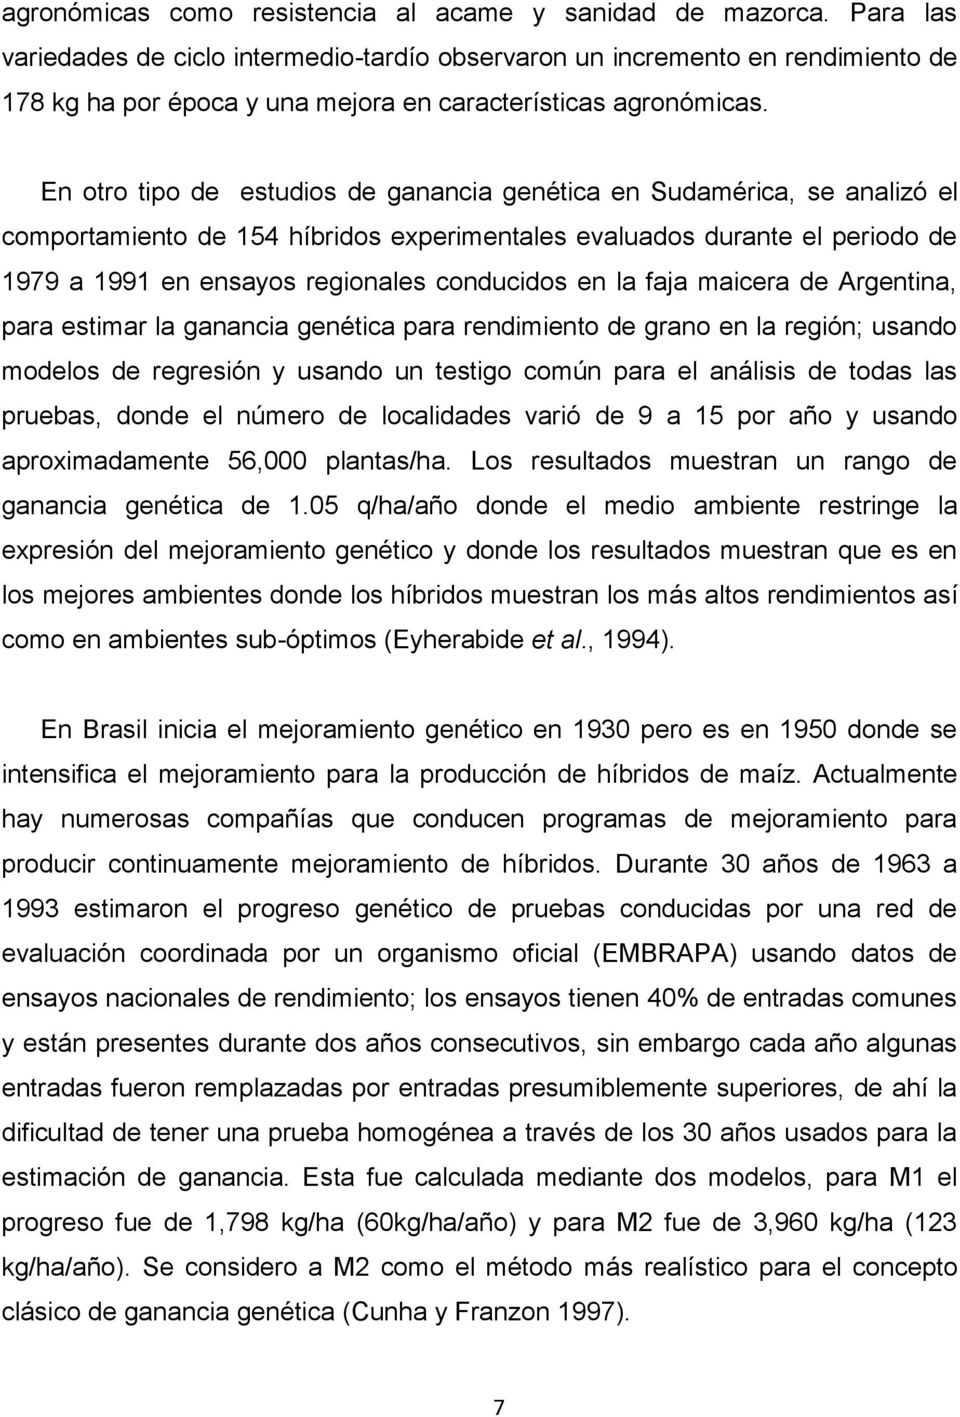 En otro tipo de estudios de ganancia genética en Sudamérica, se analizó el comportamiento de 154 híbridos experimentales evaluados durante el periodo de 1979 a 1991 en ensayos regionales conducidos